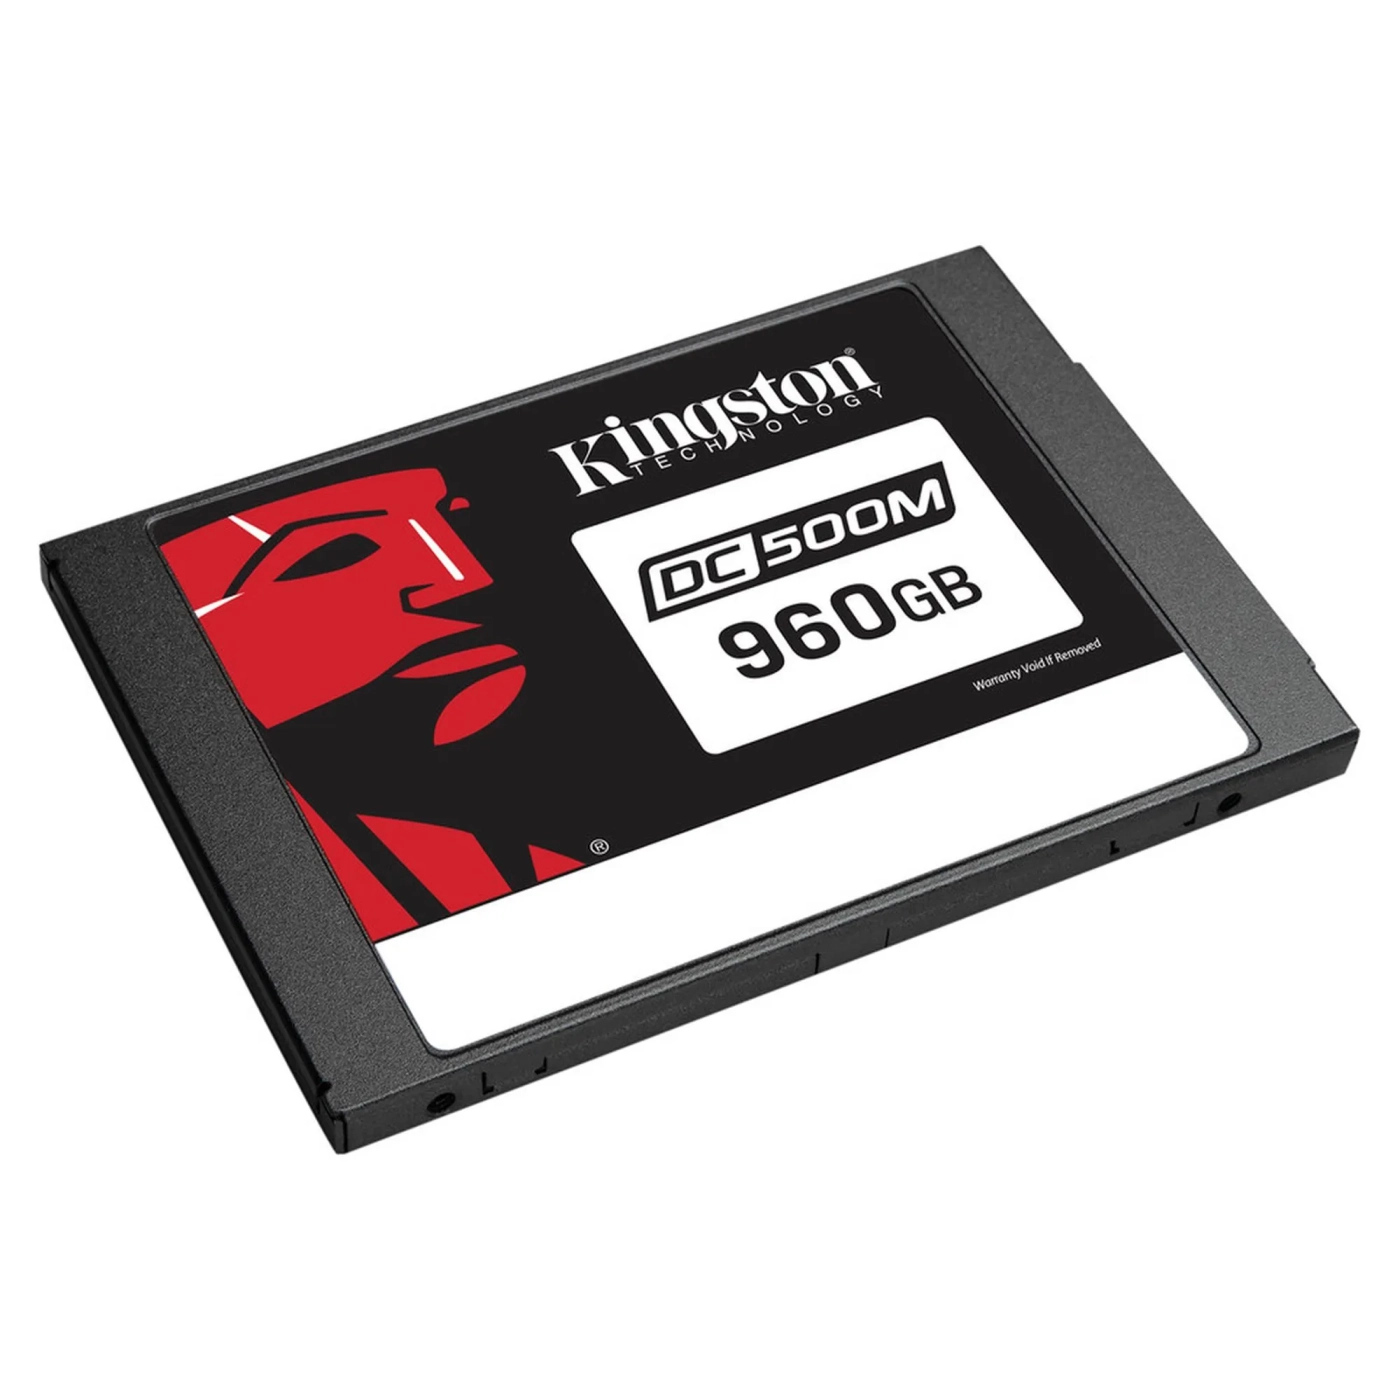 Купить SSD диск Kingston DC500M 960GB 2.5" SATA III (SEDC500M/960G) - фото 2